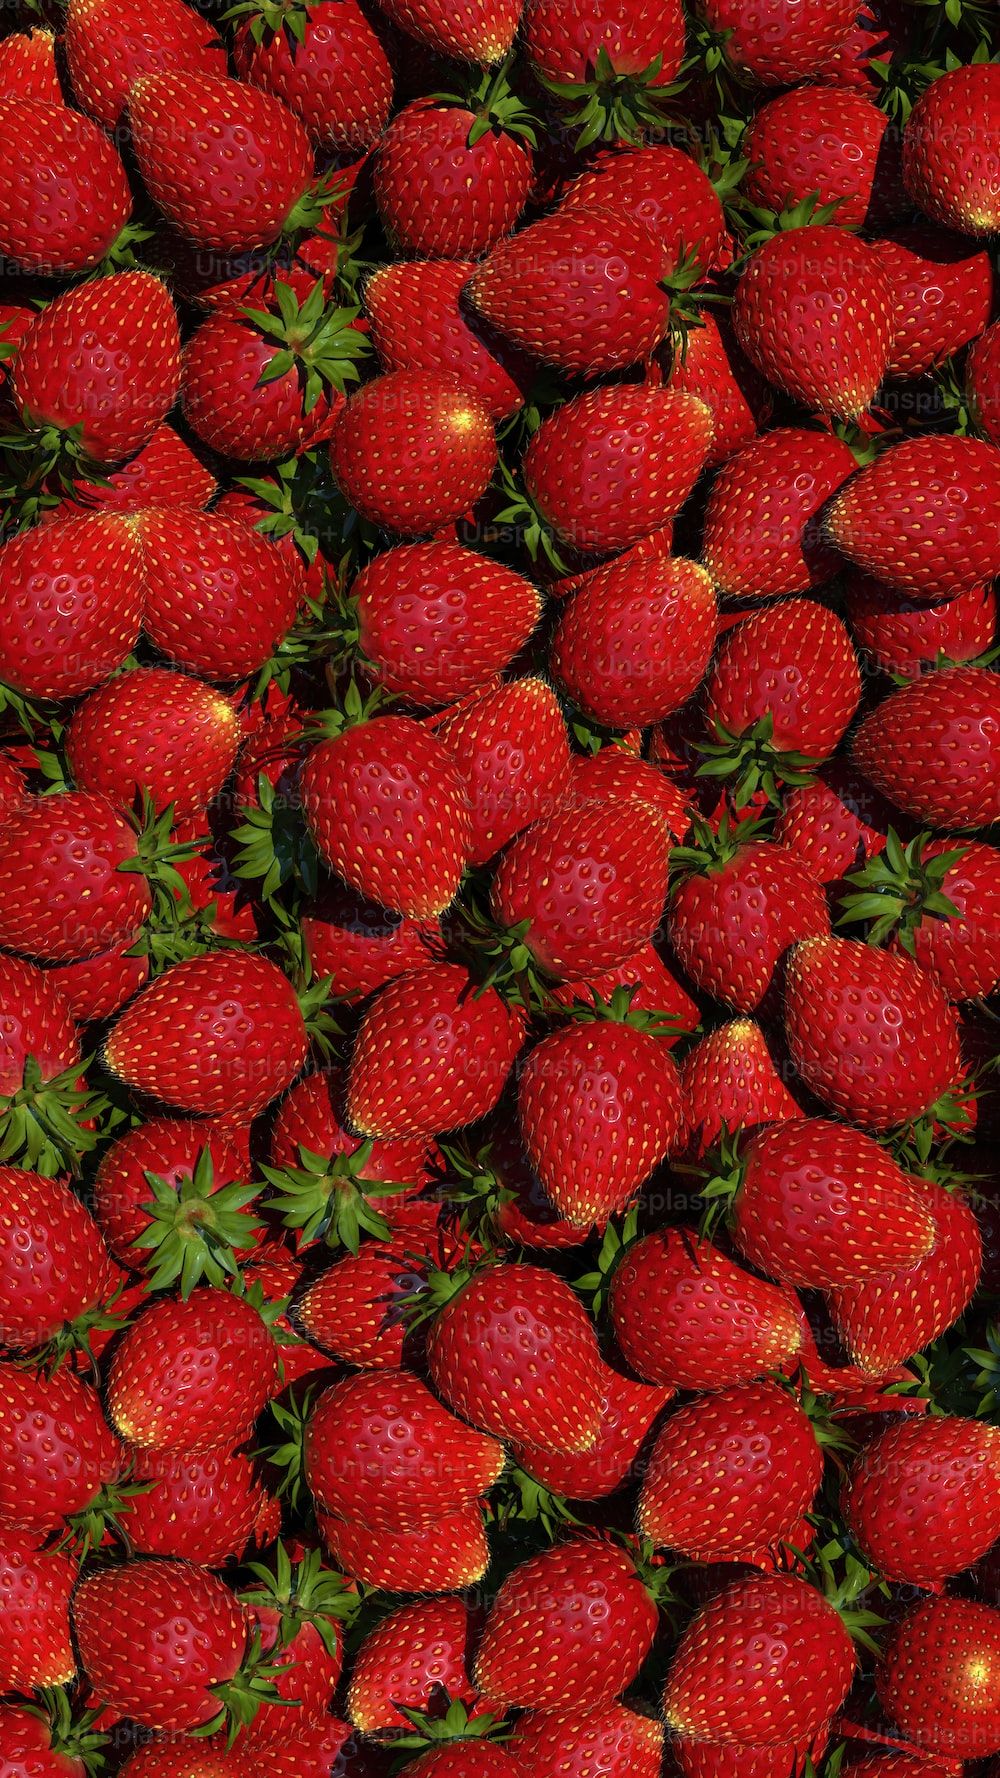  Erdbeeren Hintergrundbild 1000x1778. Foto zum Thema Nahaufnahme eines Straußes Erdbeeren